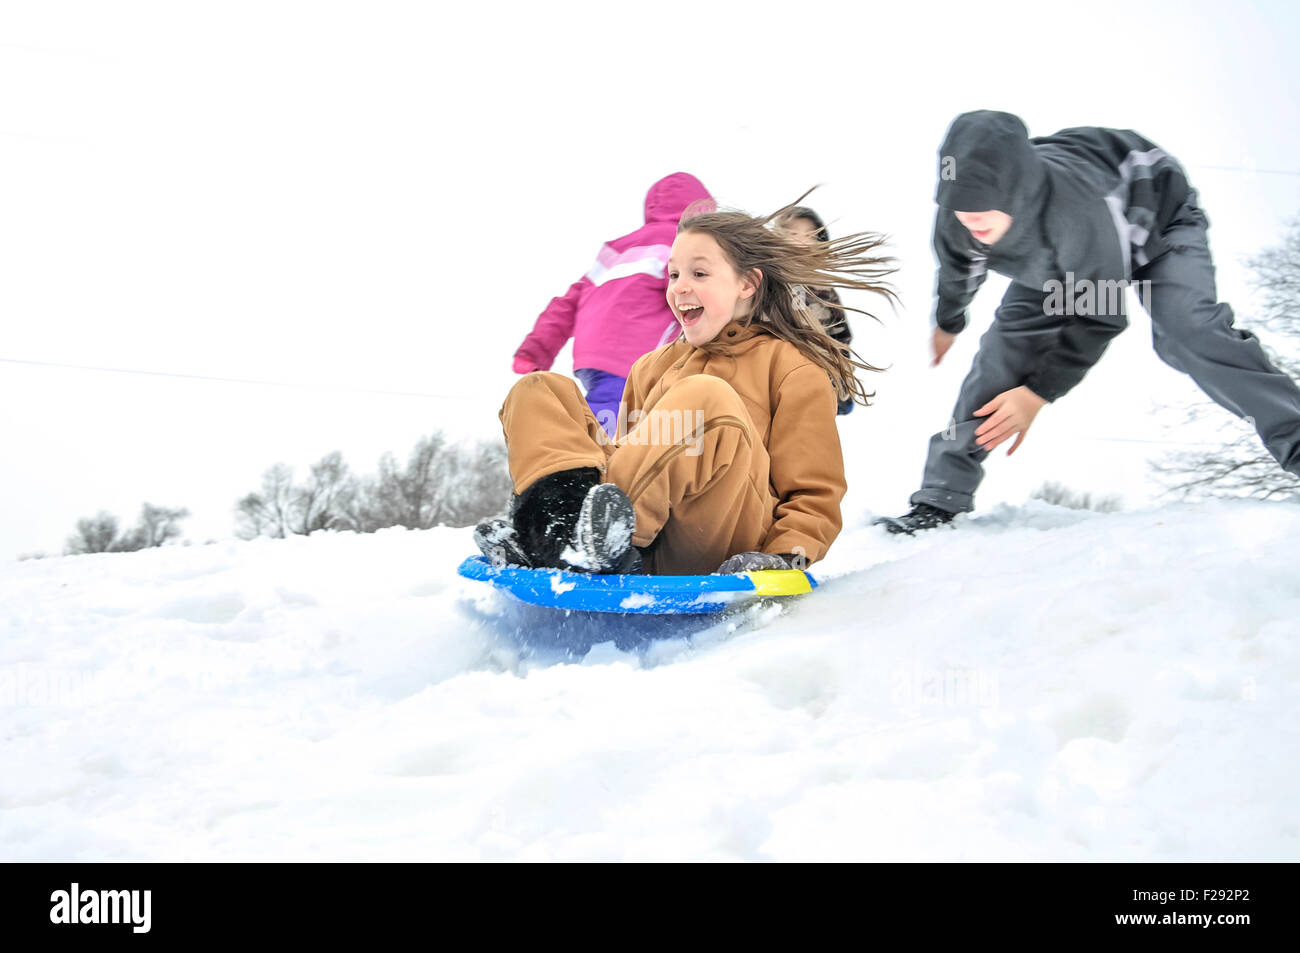 La ragazza viene spinto verso il basso snowy hill in sled Foto Stock